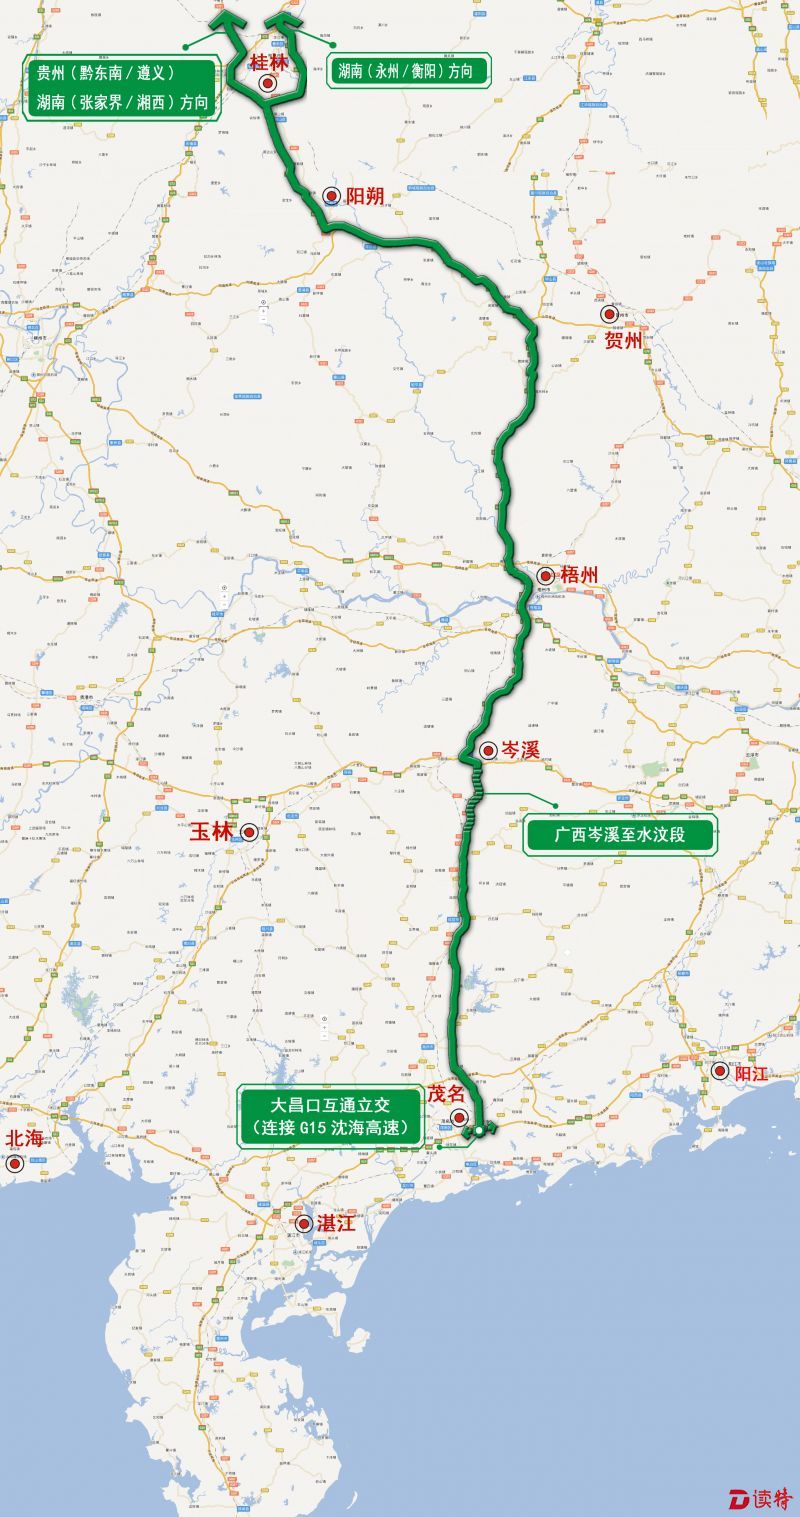 此前,从粤西前往广西需要提前出高速再绕行g207国道,今后湛江,茂名